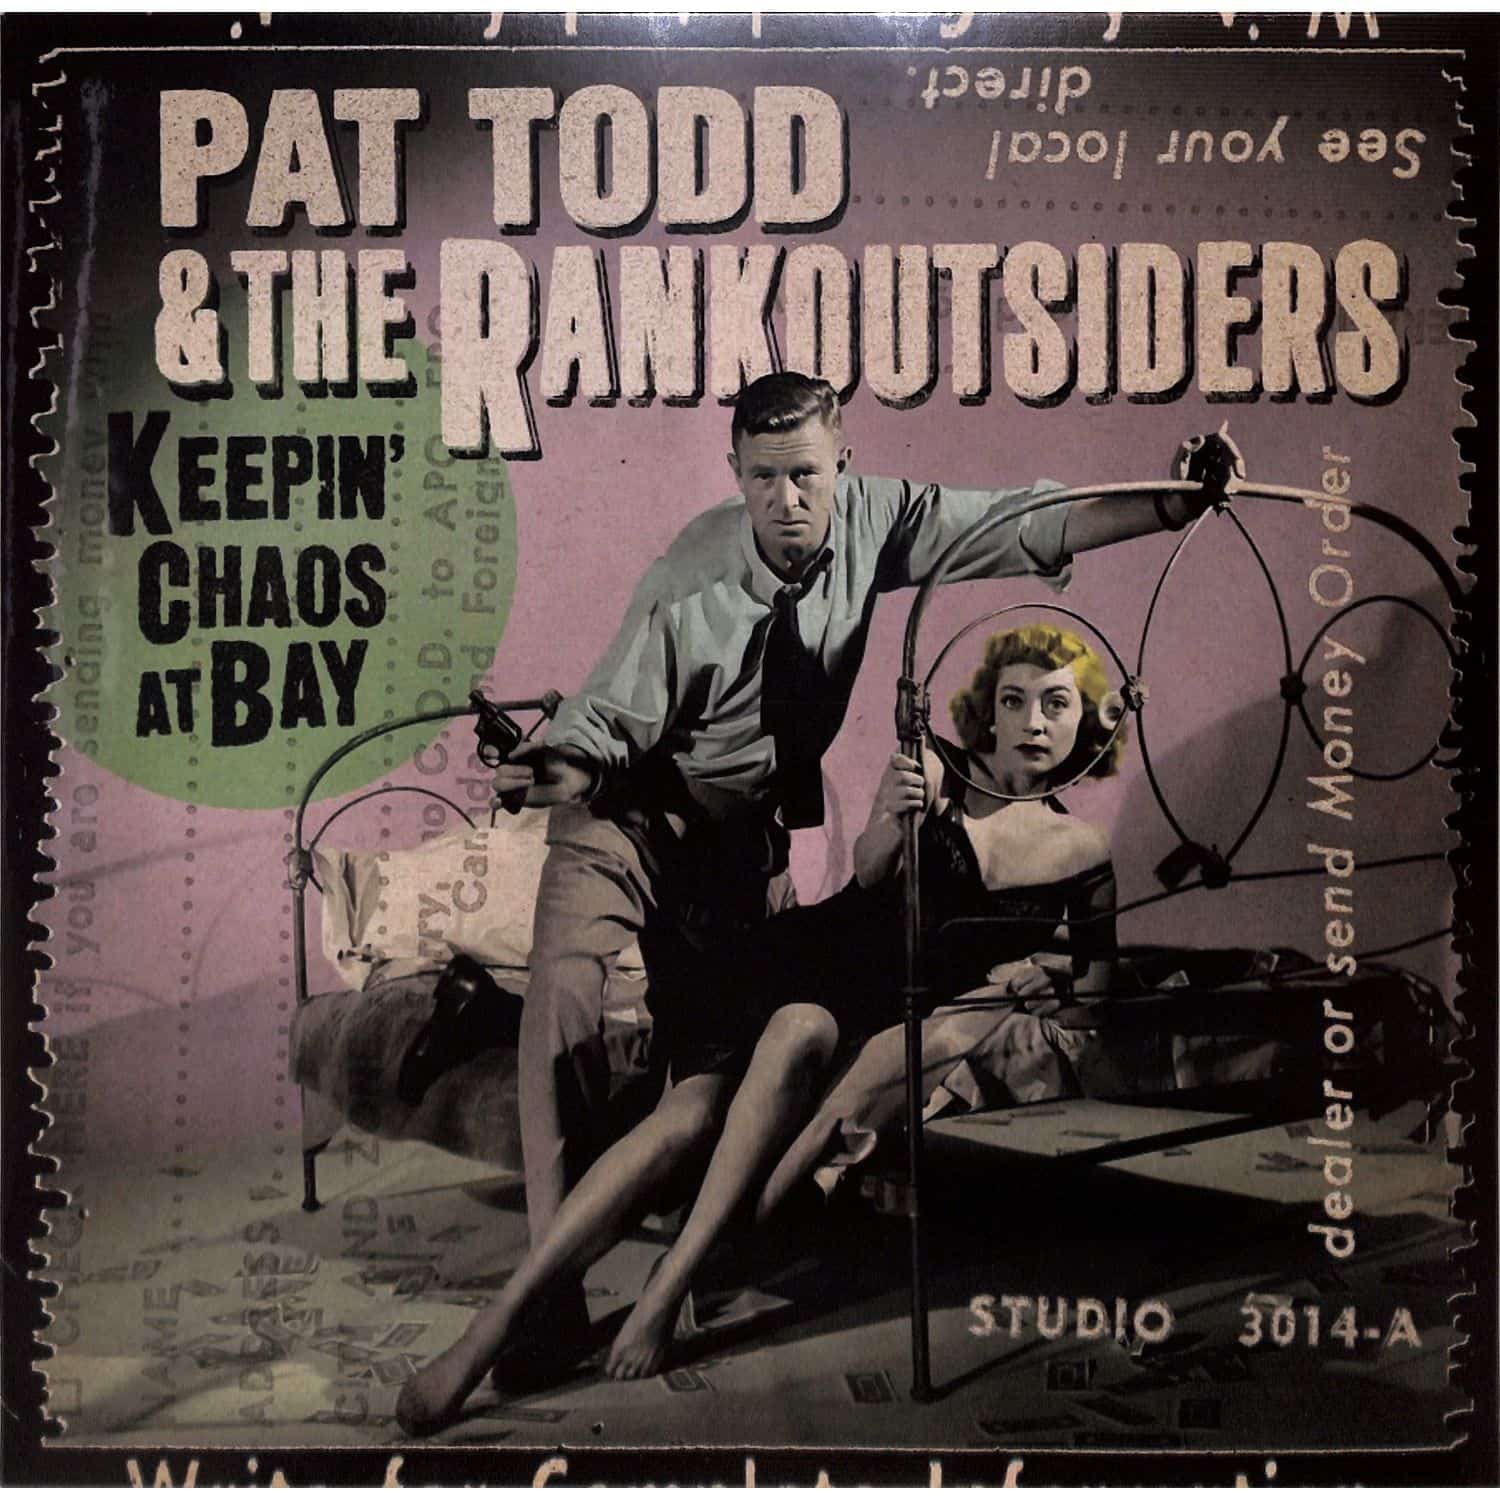 Pat Todd / The Rankoutsiders - KEEPIN CHAOS AT BAY 